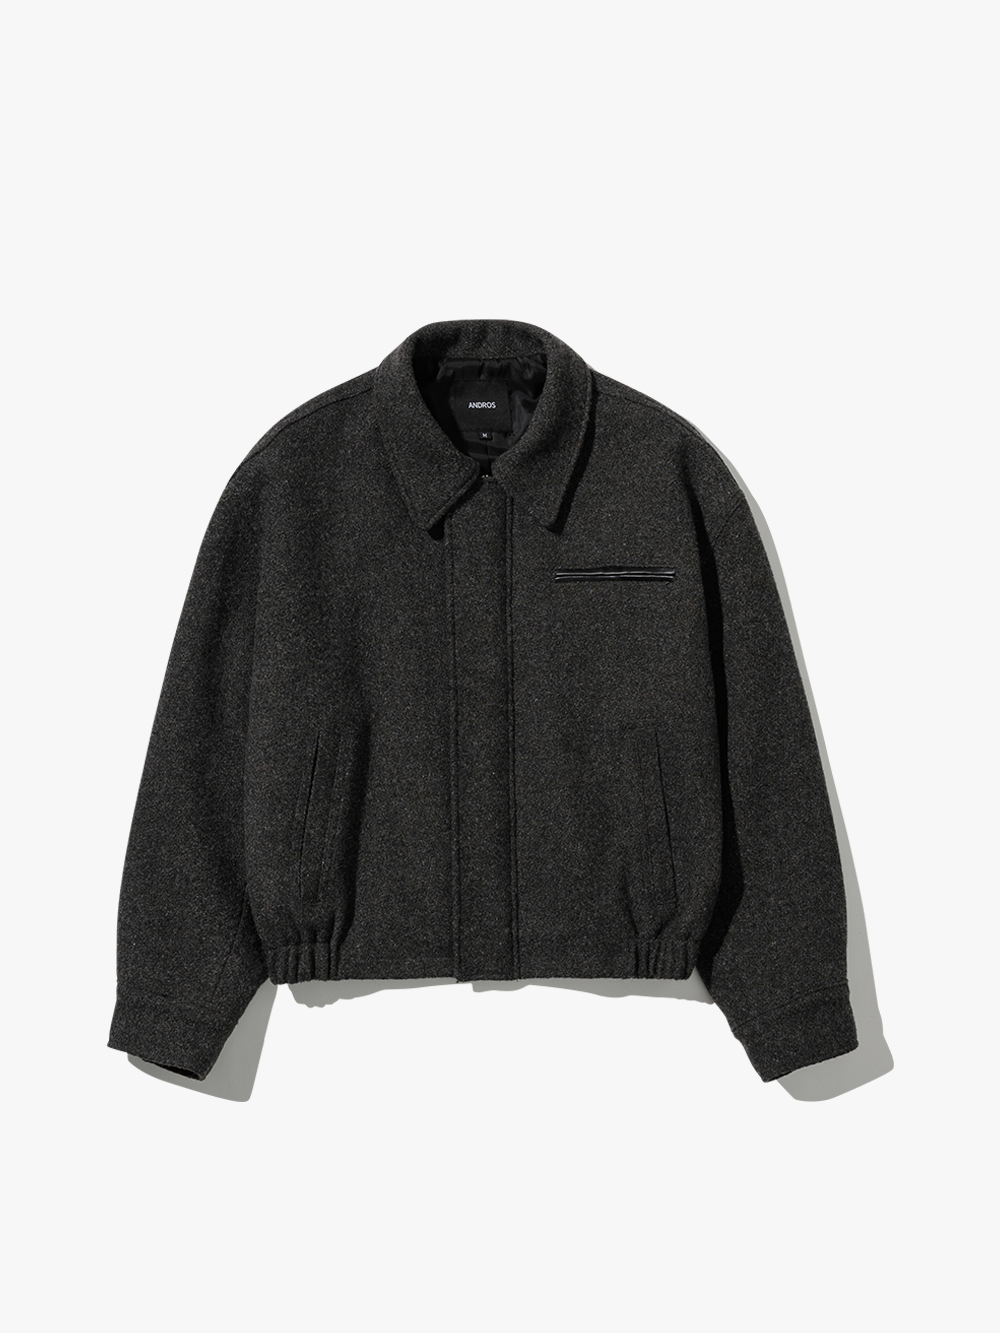 Wool Zip Jacket (Charcoal)